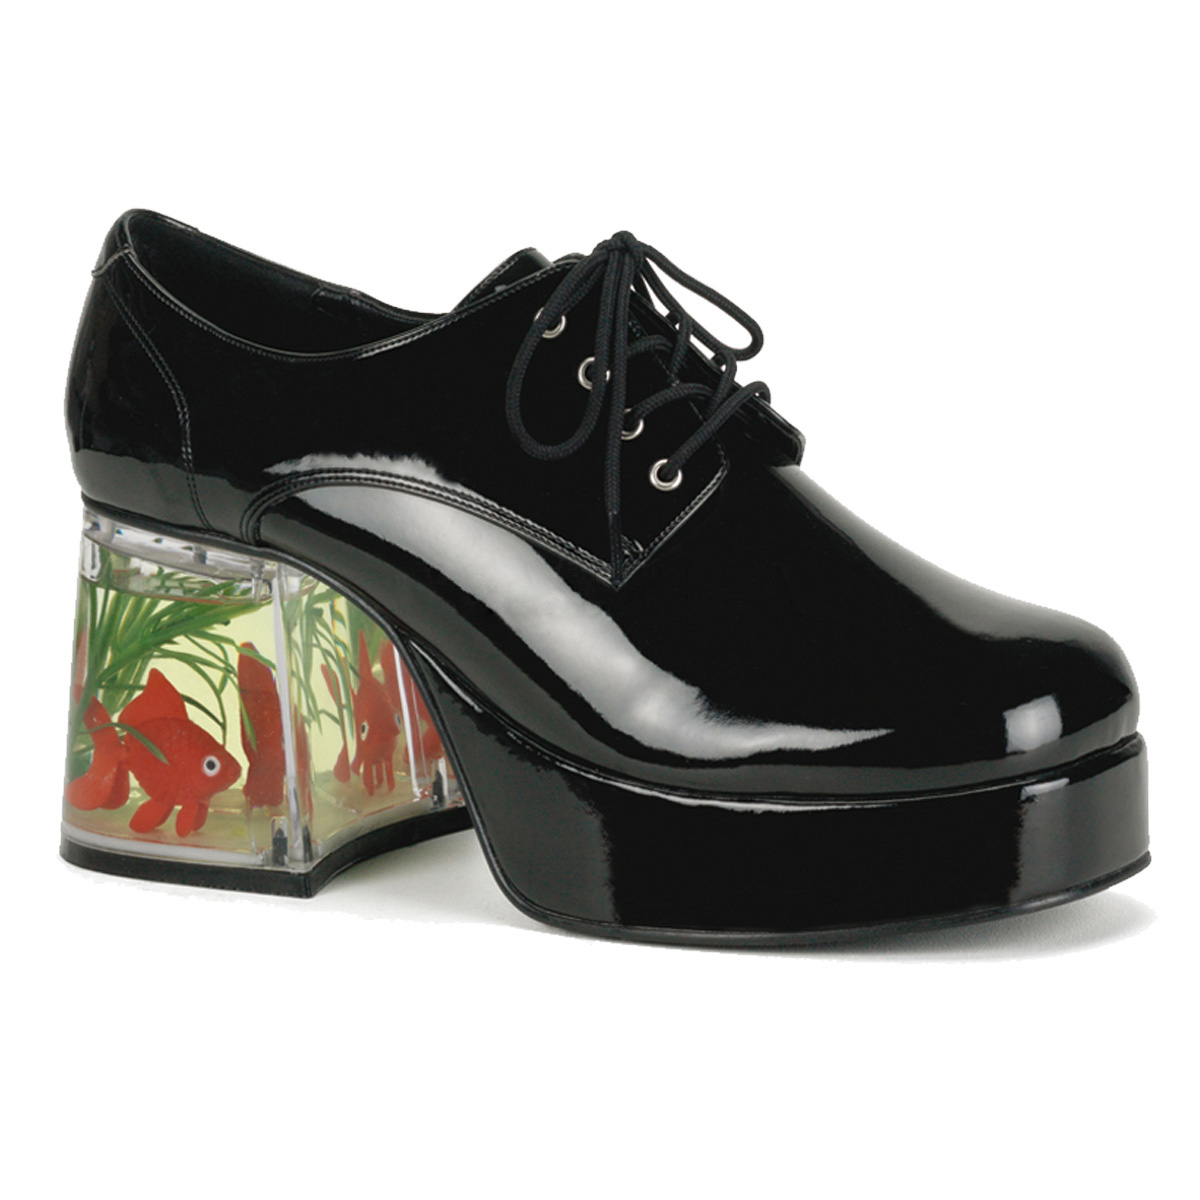 Men Platform Shoes PIMP-02 - Black 